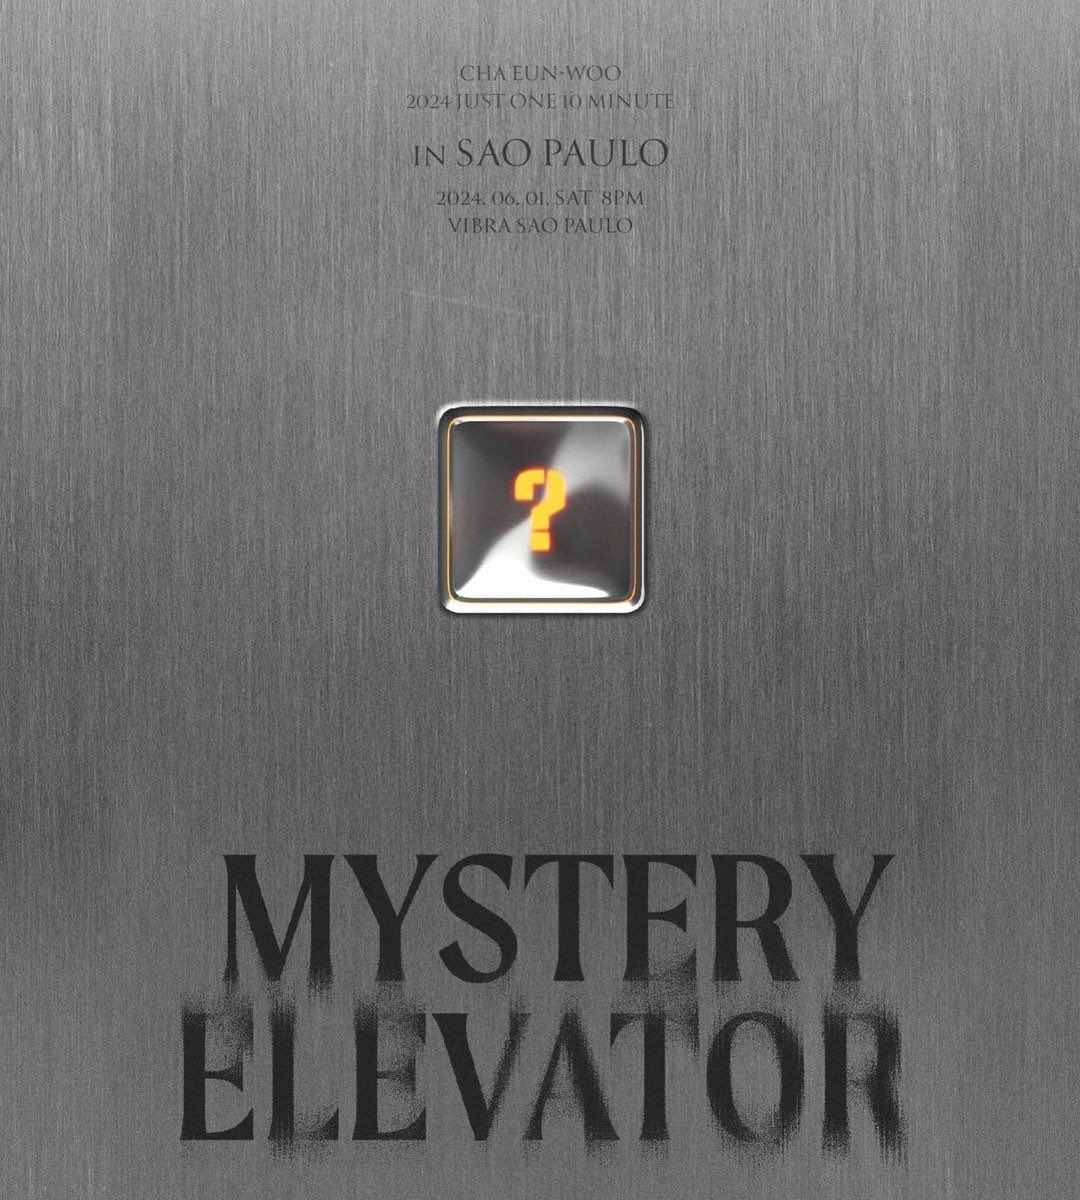 EXCURSÃO MYSTERY ELEVATOR